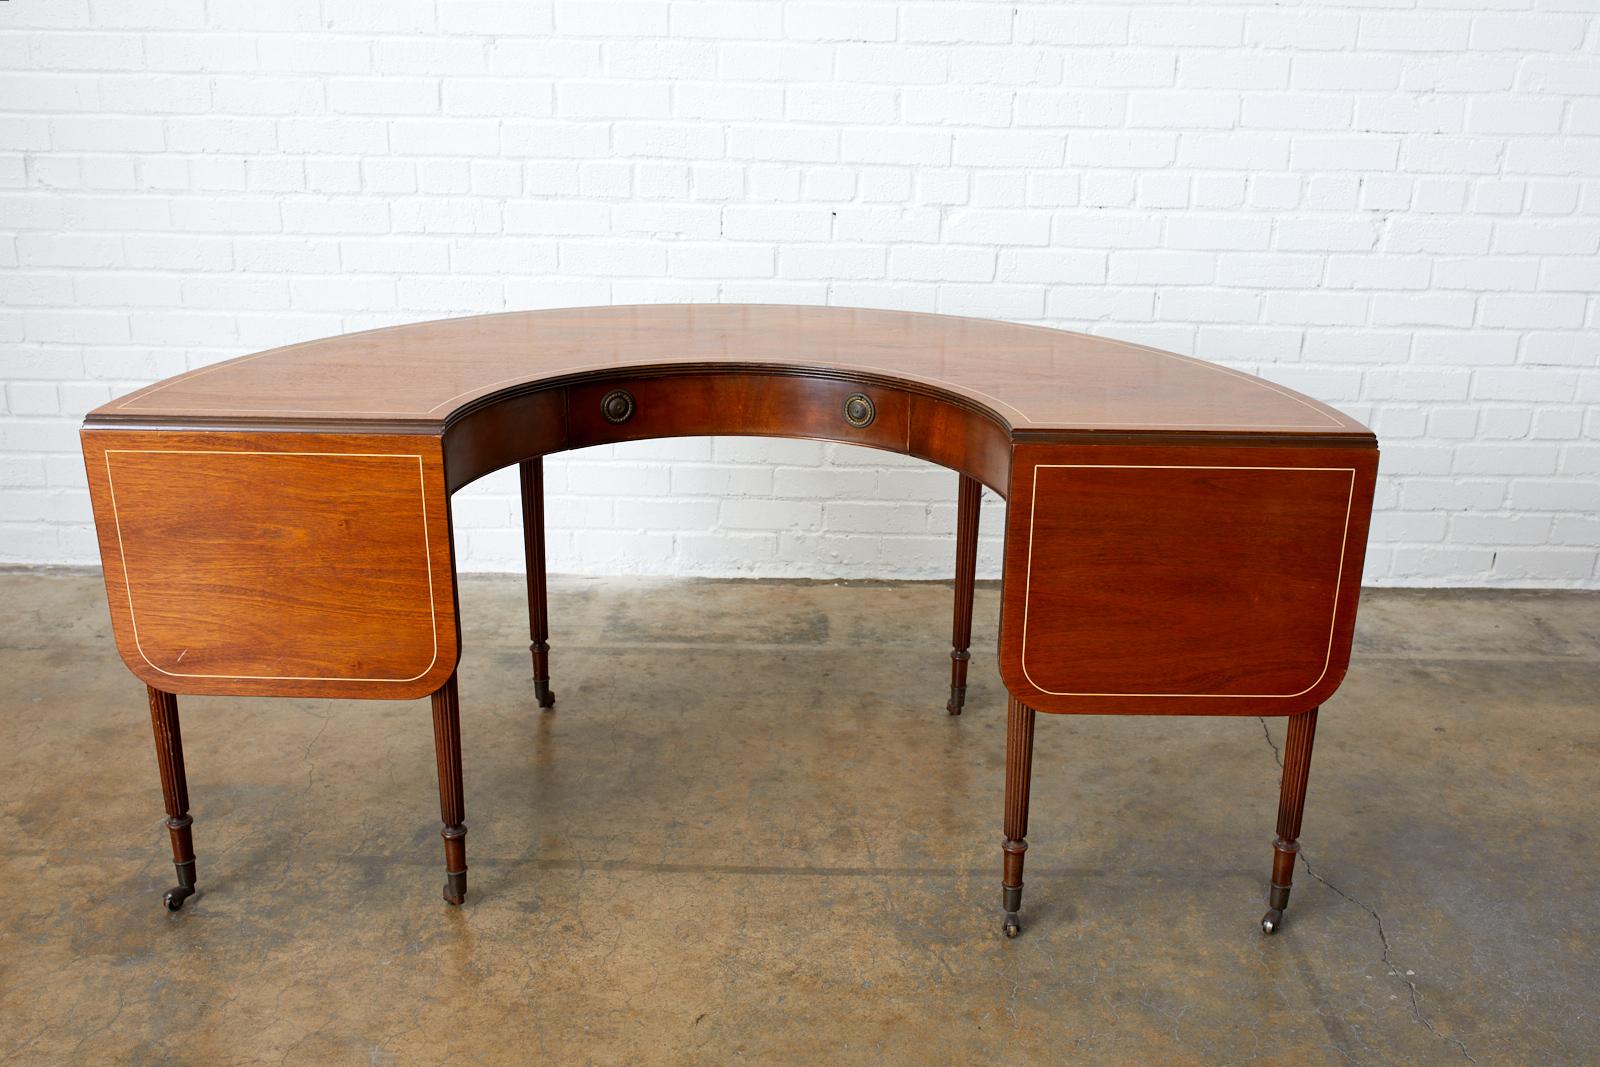 English Regency Style Drop-Leaf Hunt Table or Desk 1